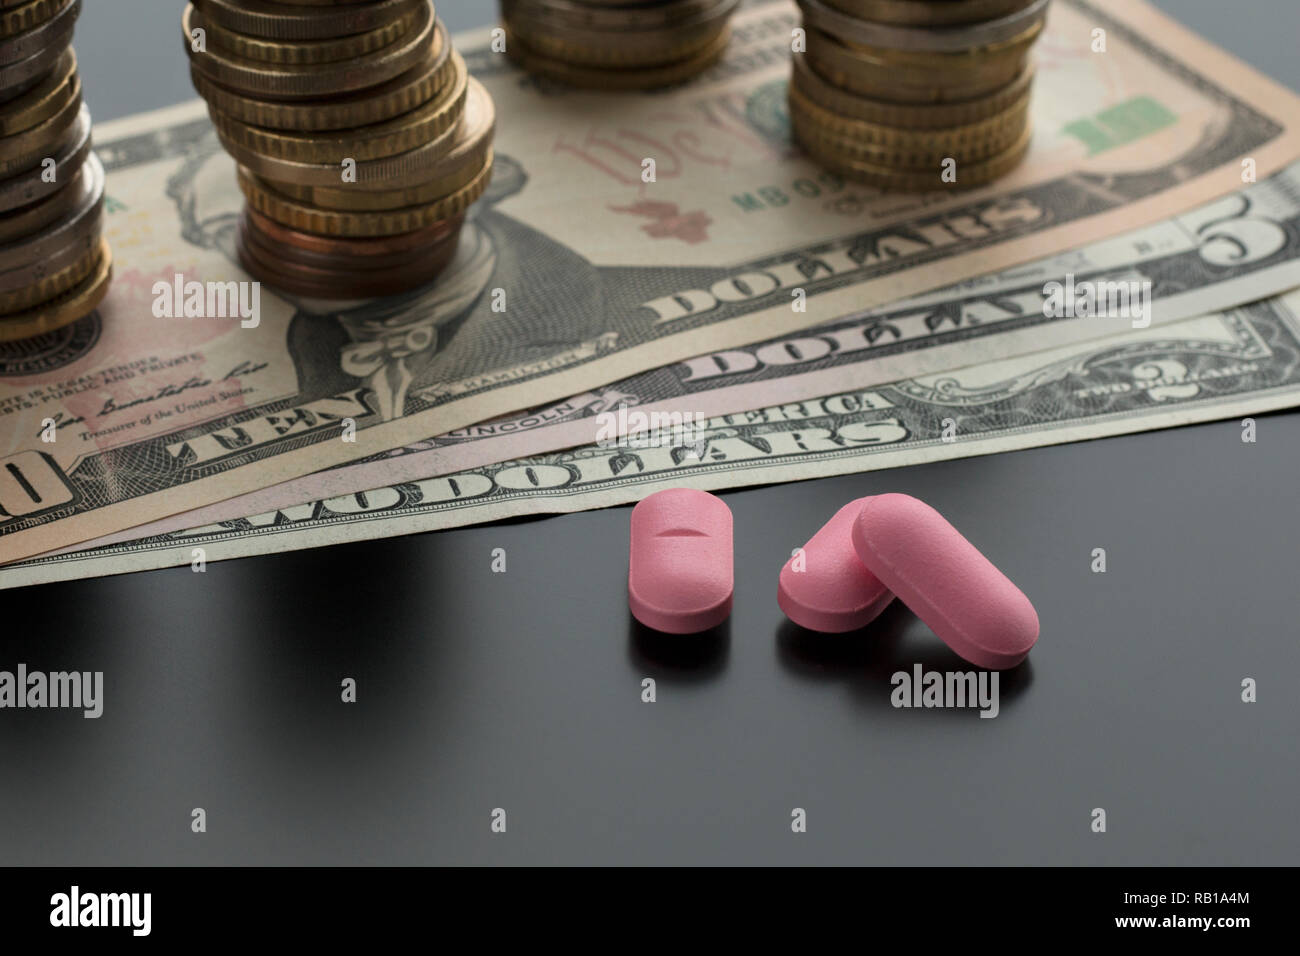 Trois comprimés, pilules roses avec des dollars et des piles de pièces de monnaie sur l'arrière-plan. Notion de frais médicaux Banque D'Images